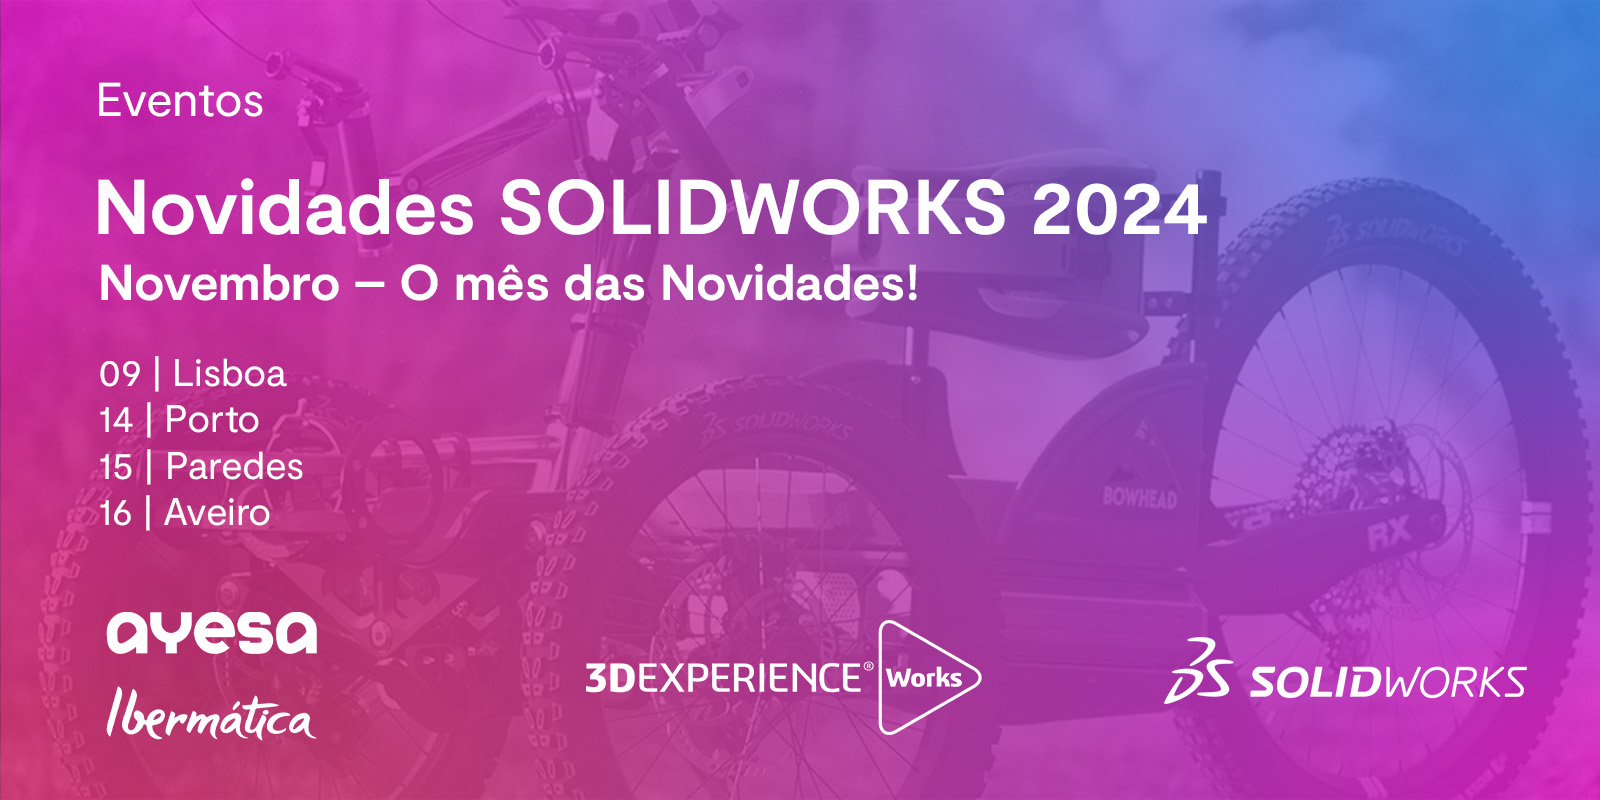 Ibermática an Ayesa company | Evento “Novidades SOLIDWORKS 2024”